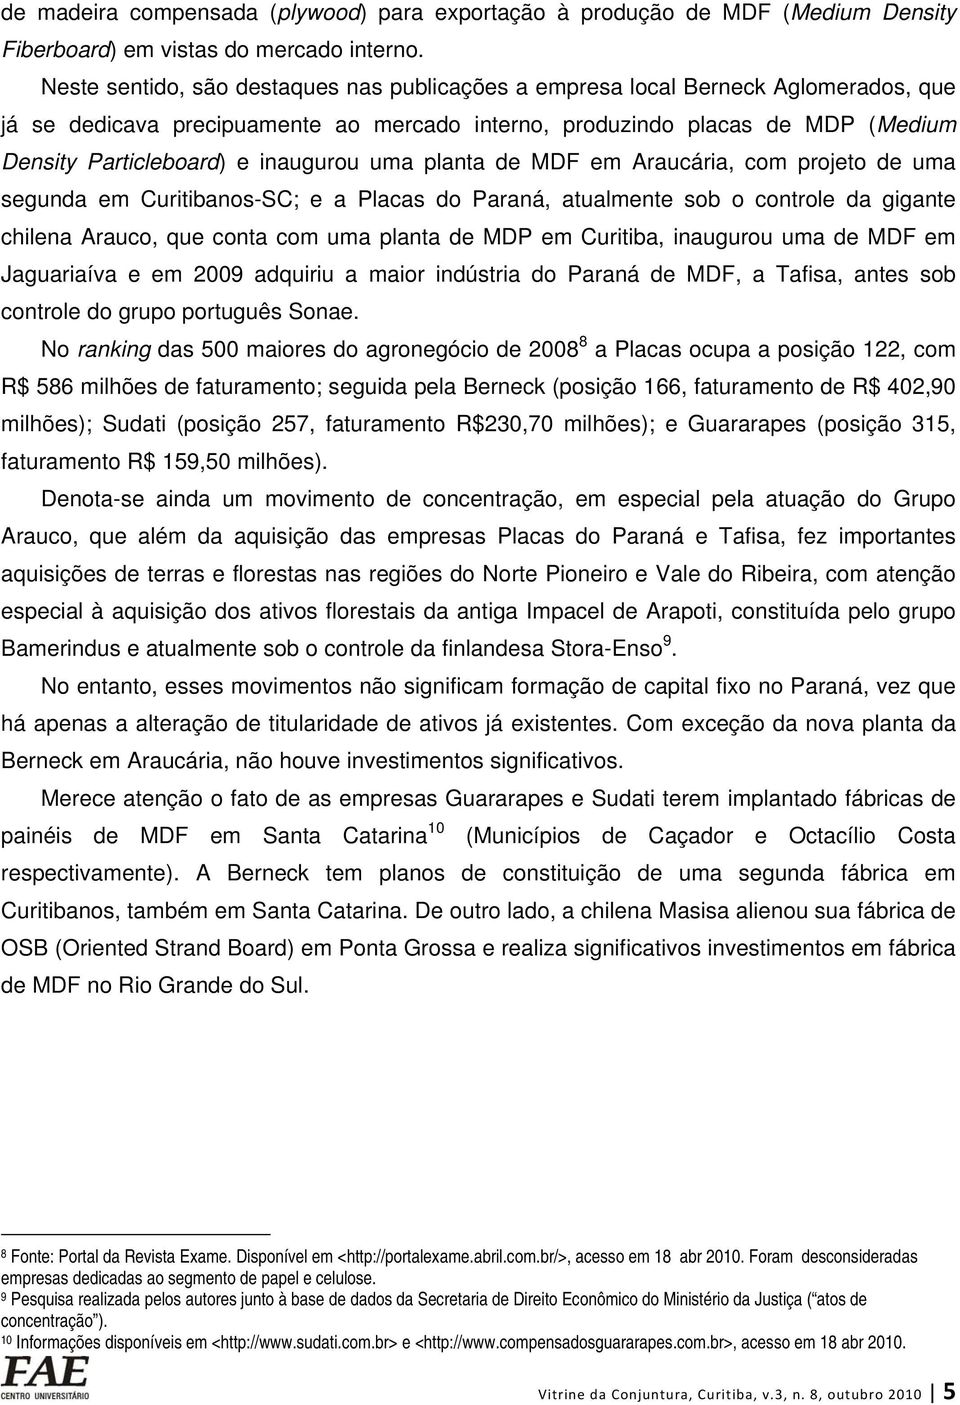 inaugurou uma planta de MDF em Araucária, com projeto de uma segunda em Curitibanos-SC; e a Placas do Paraná, atualmente sob o controle da gigante chilena Arauco, que conta com uma planta de MDP em